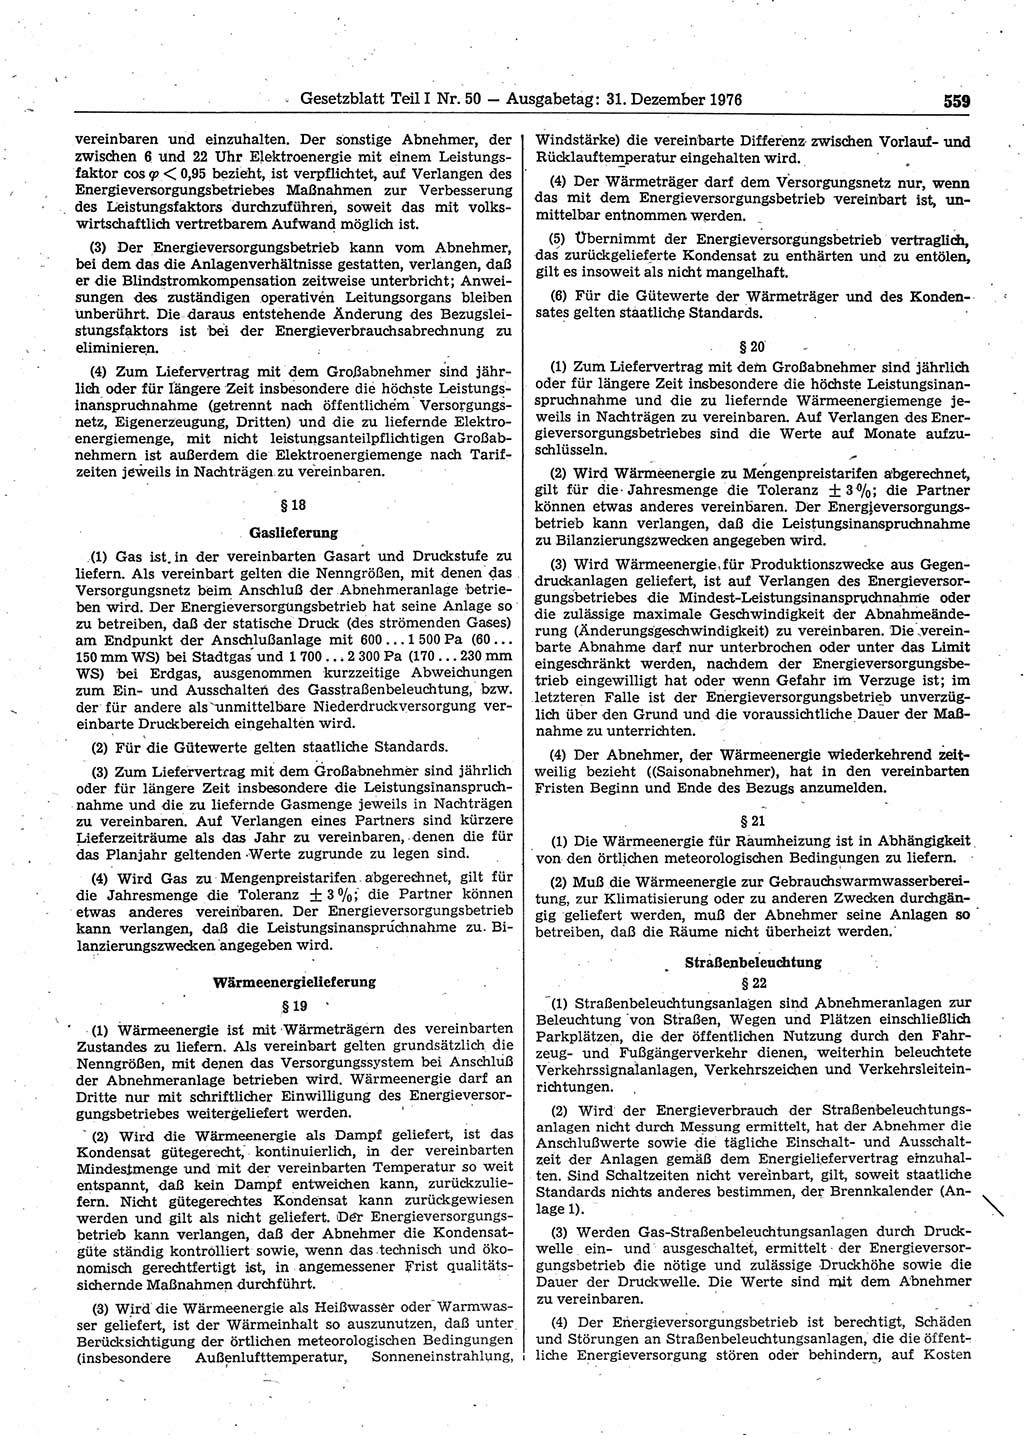 Gesetzblatt (GBl.) der Deutschen Demokratischen Republik (DDR) Teil Ⅰ 1976, Seite 559 (GBl. DDR Ⅰ 1976, S. 559)